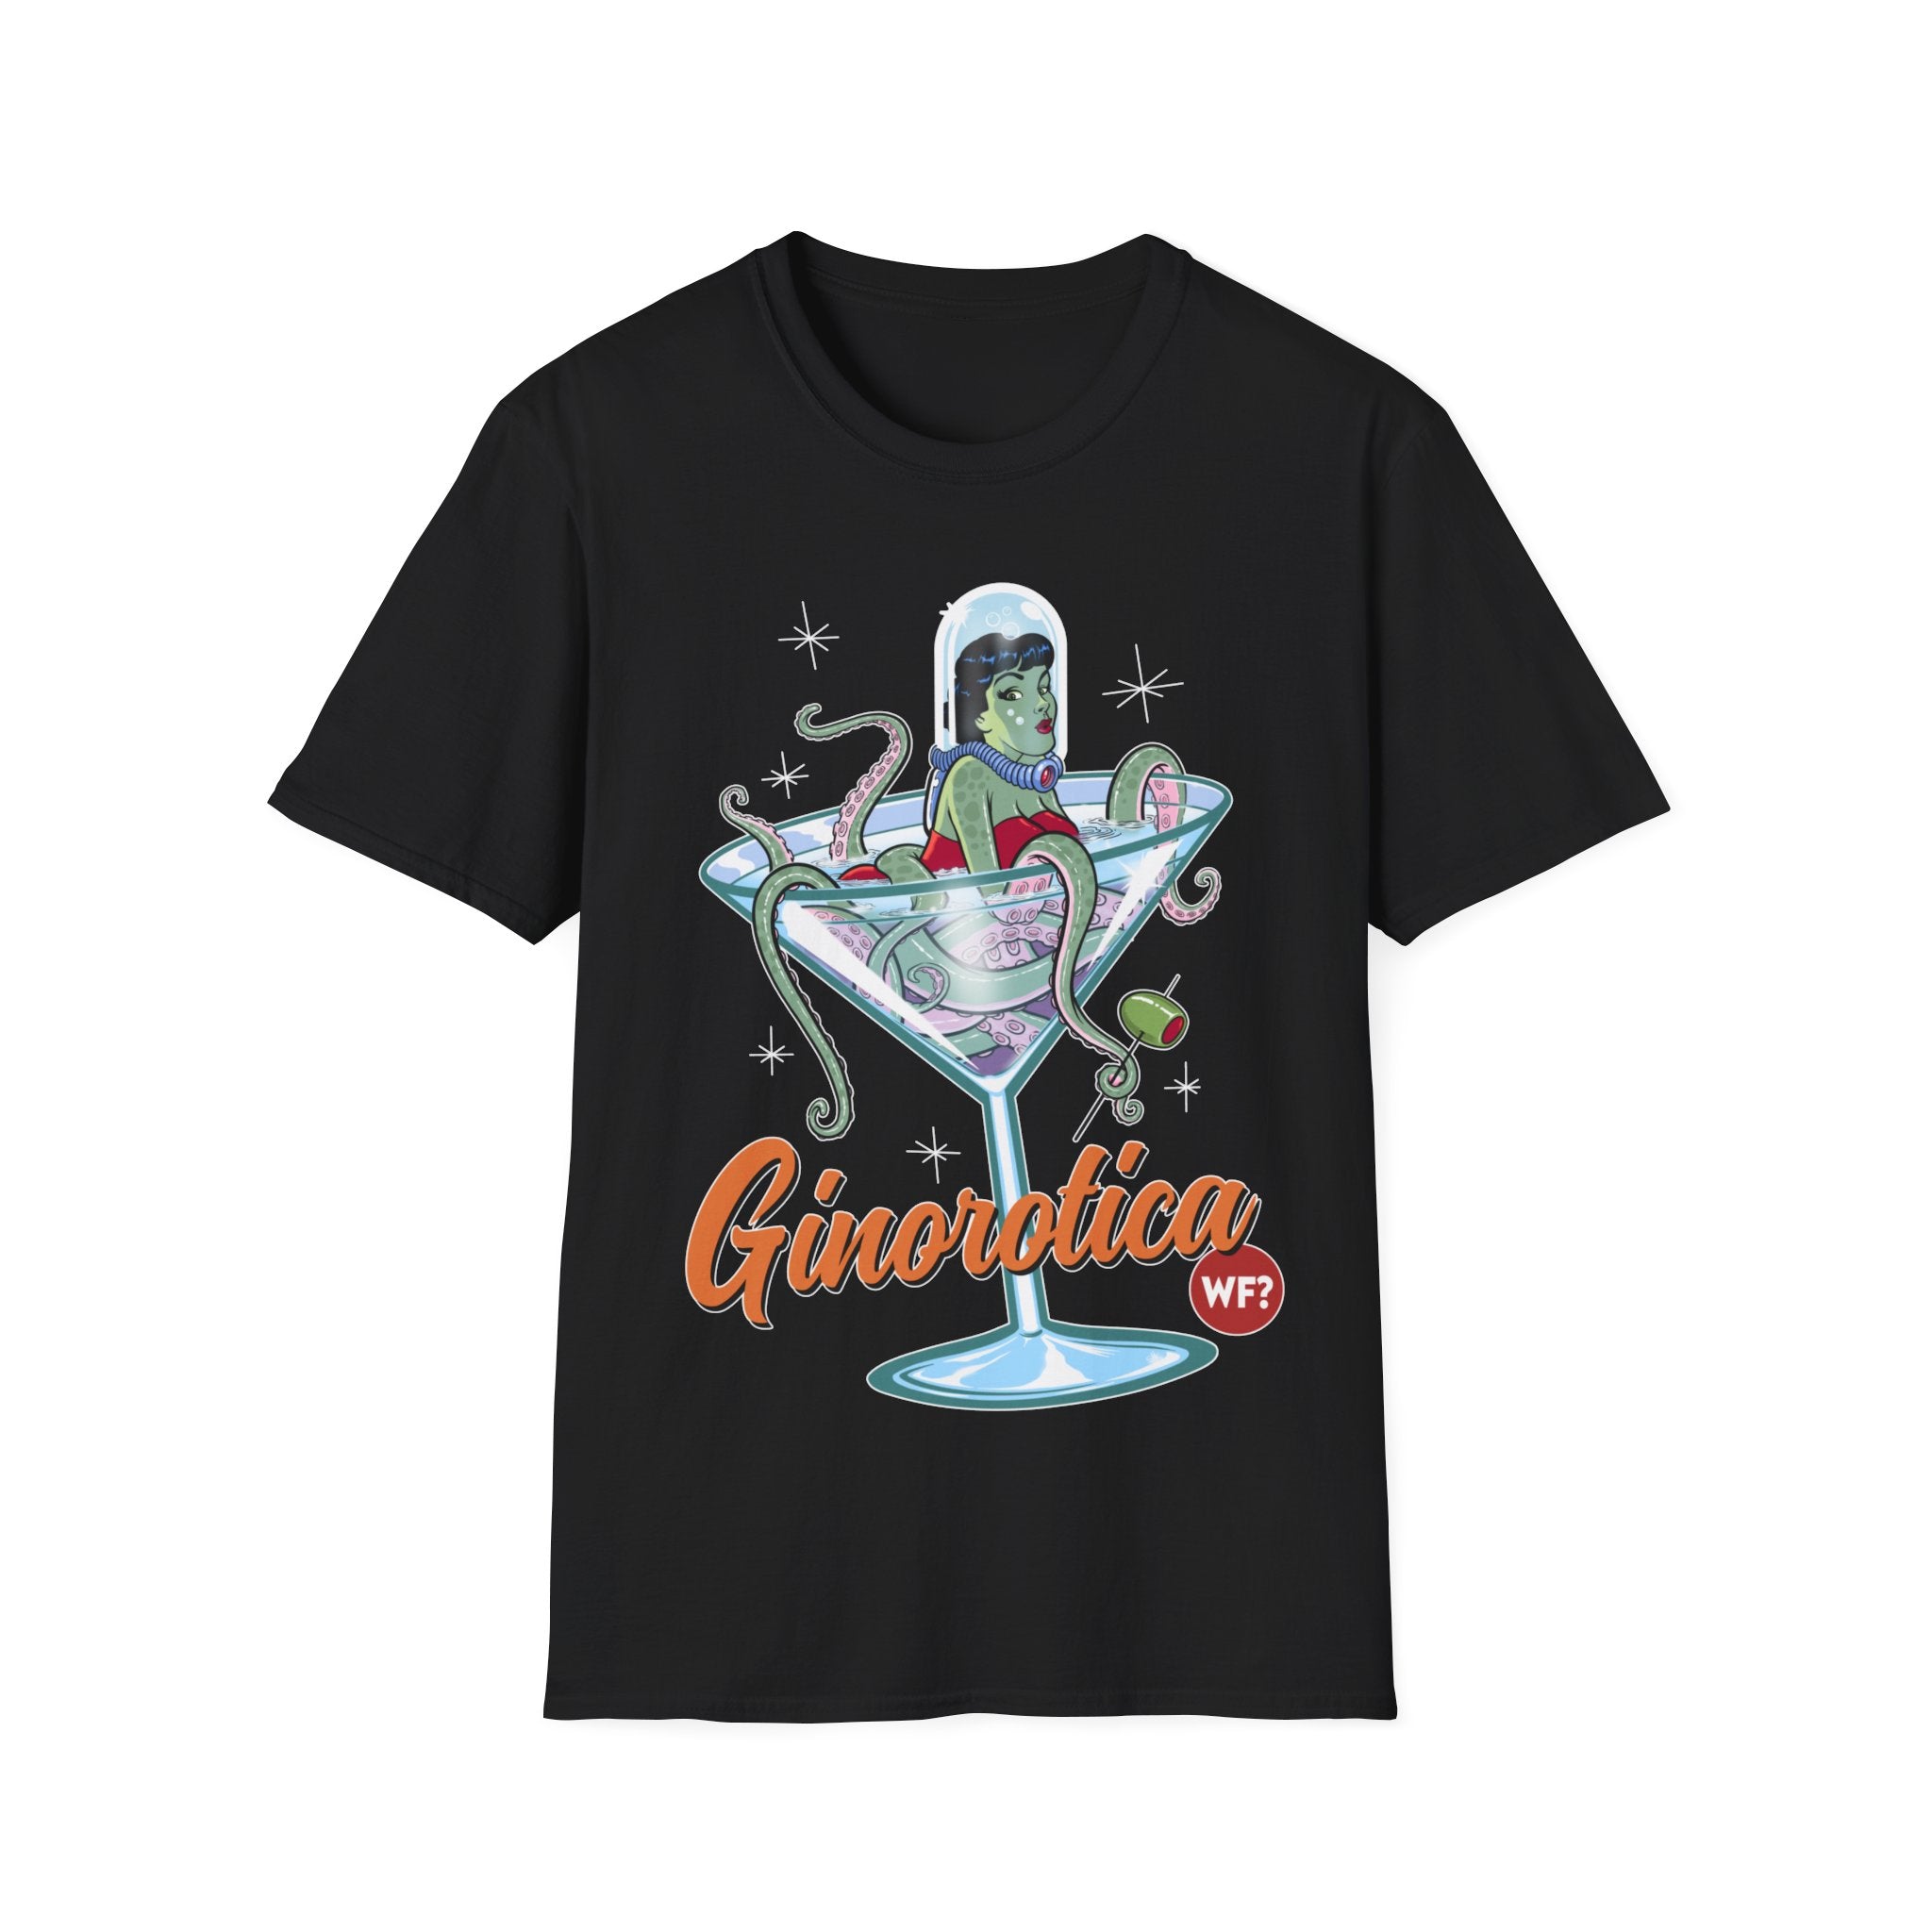 Buy black Ginorotica Unisex T-Shirt